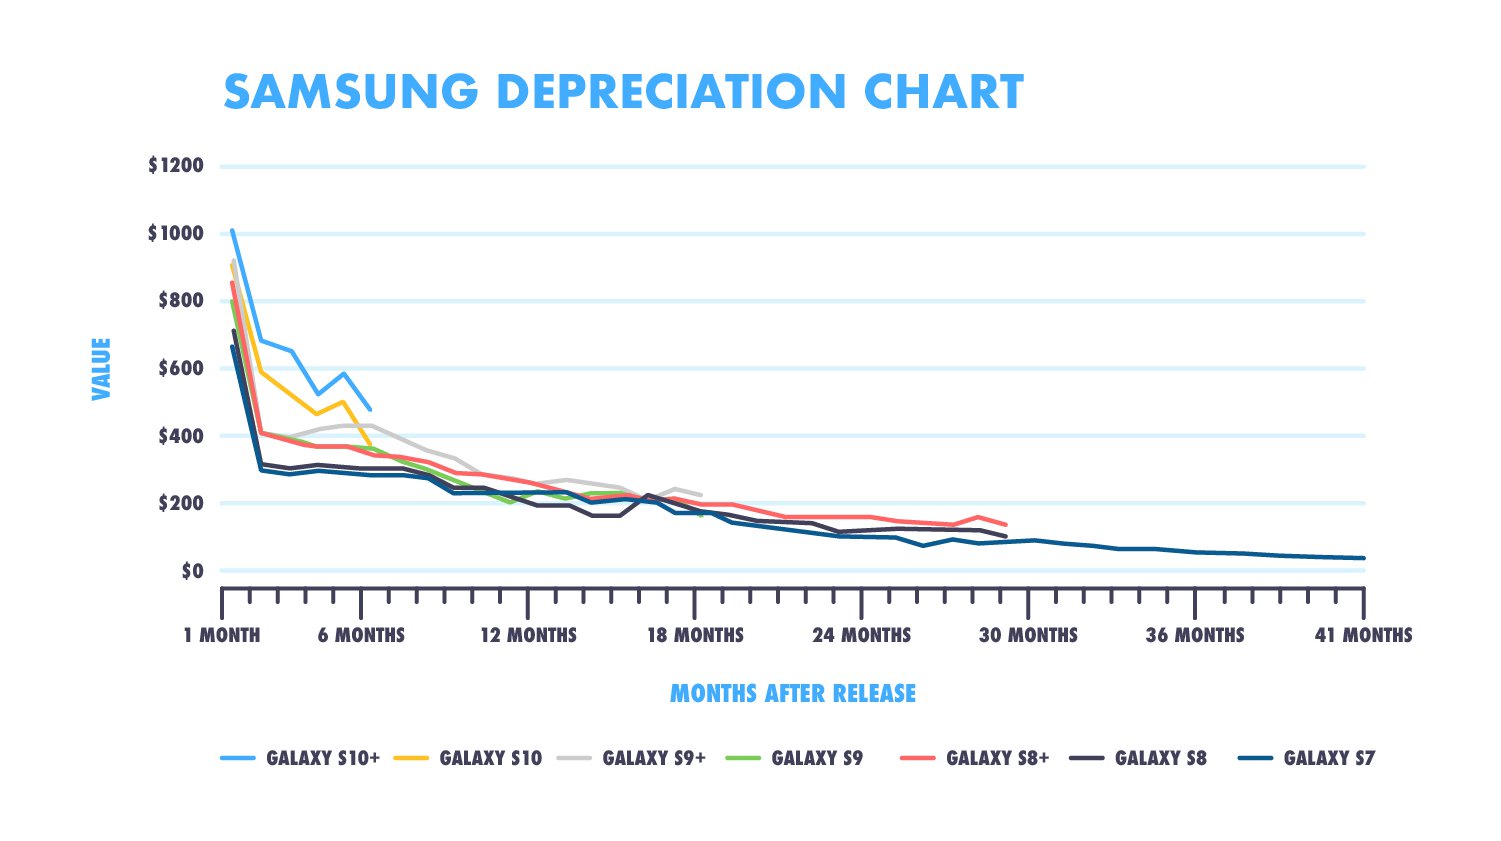 Samsung depreciation